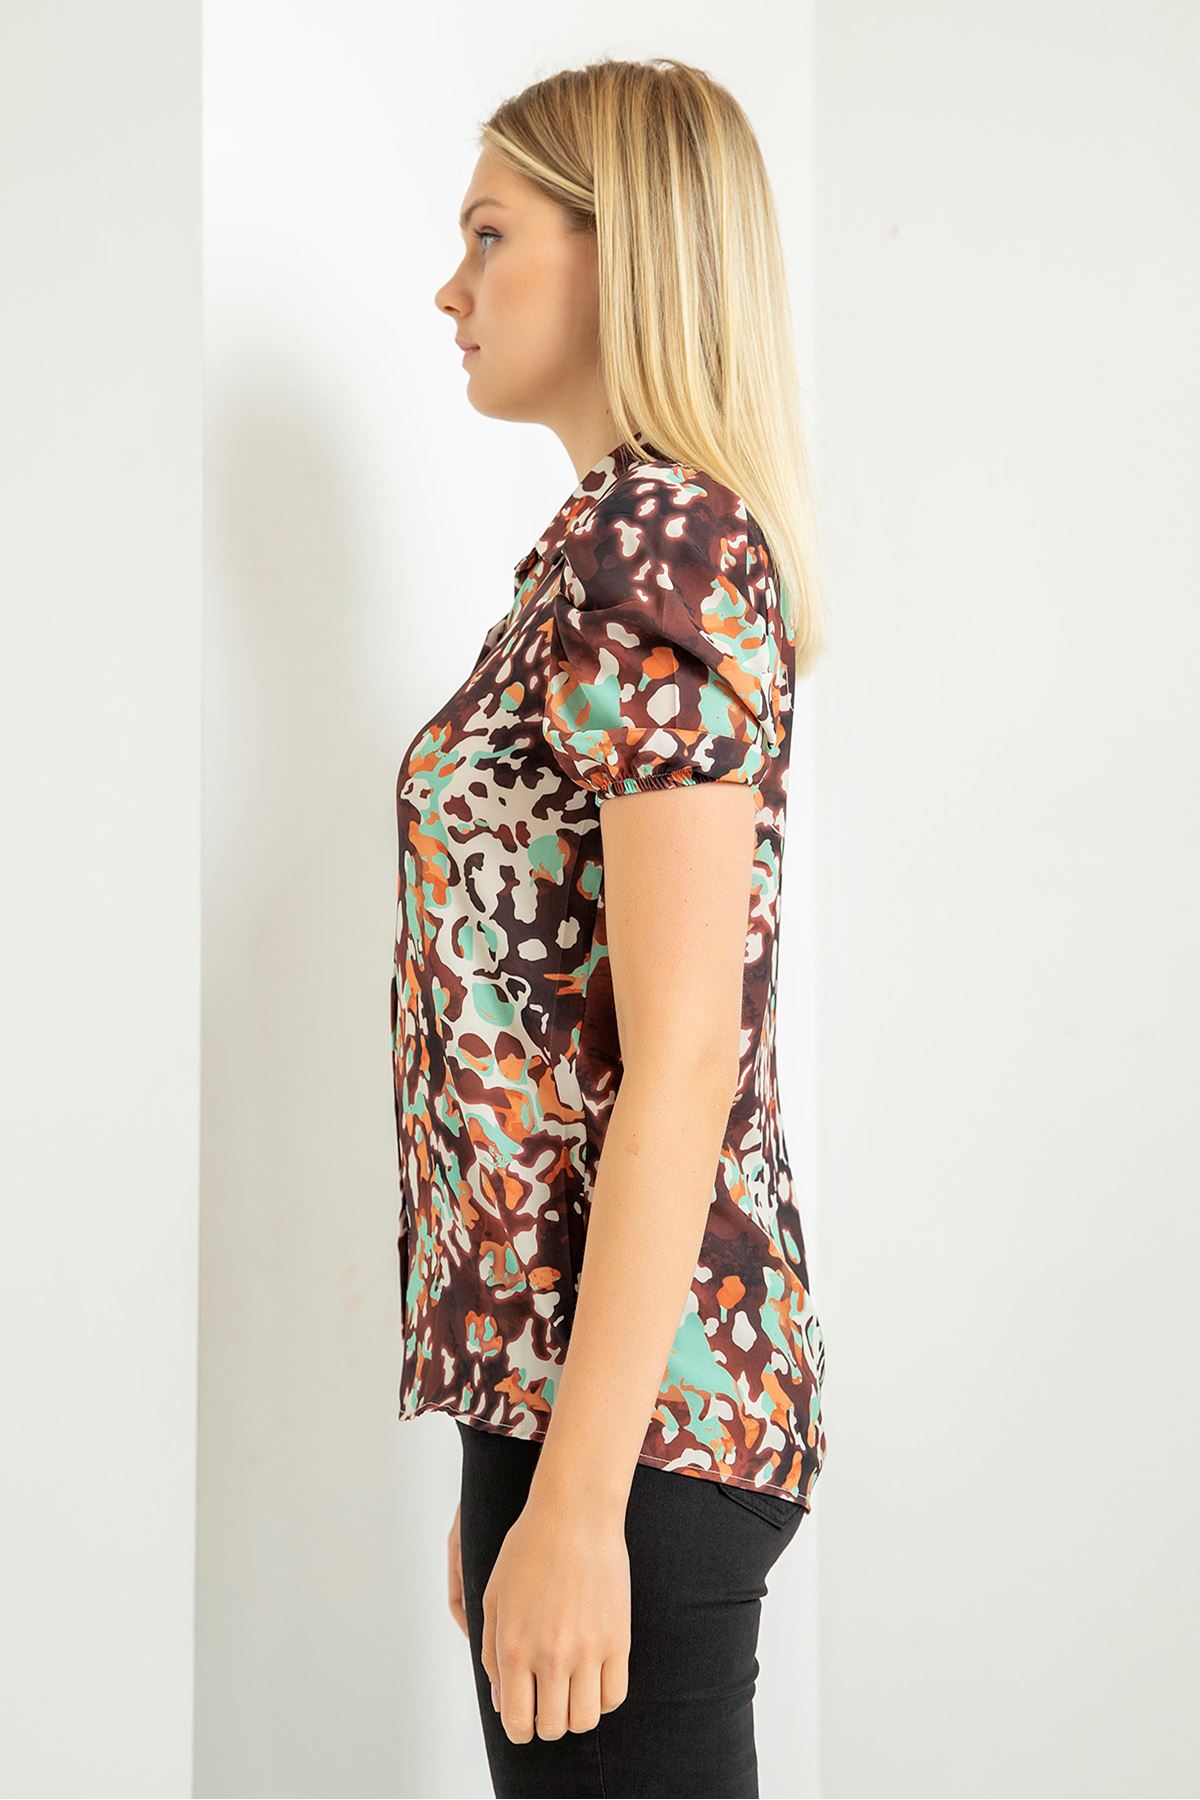 Jesica Fabric Short Sleeve Hip Height Leopard Print Women'S Shirt - Mint